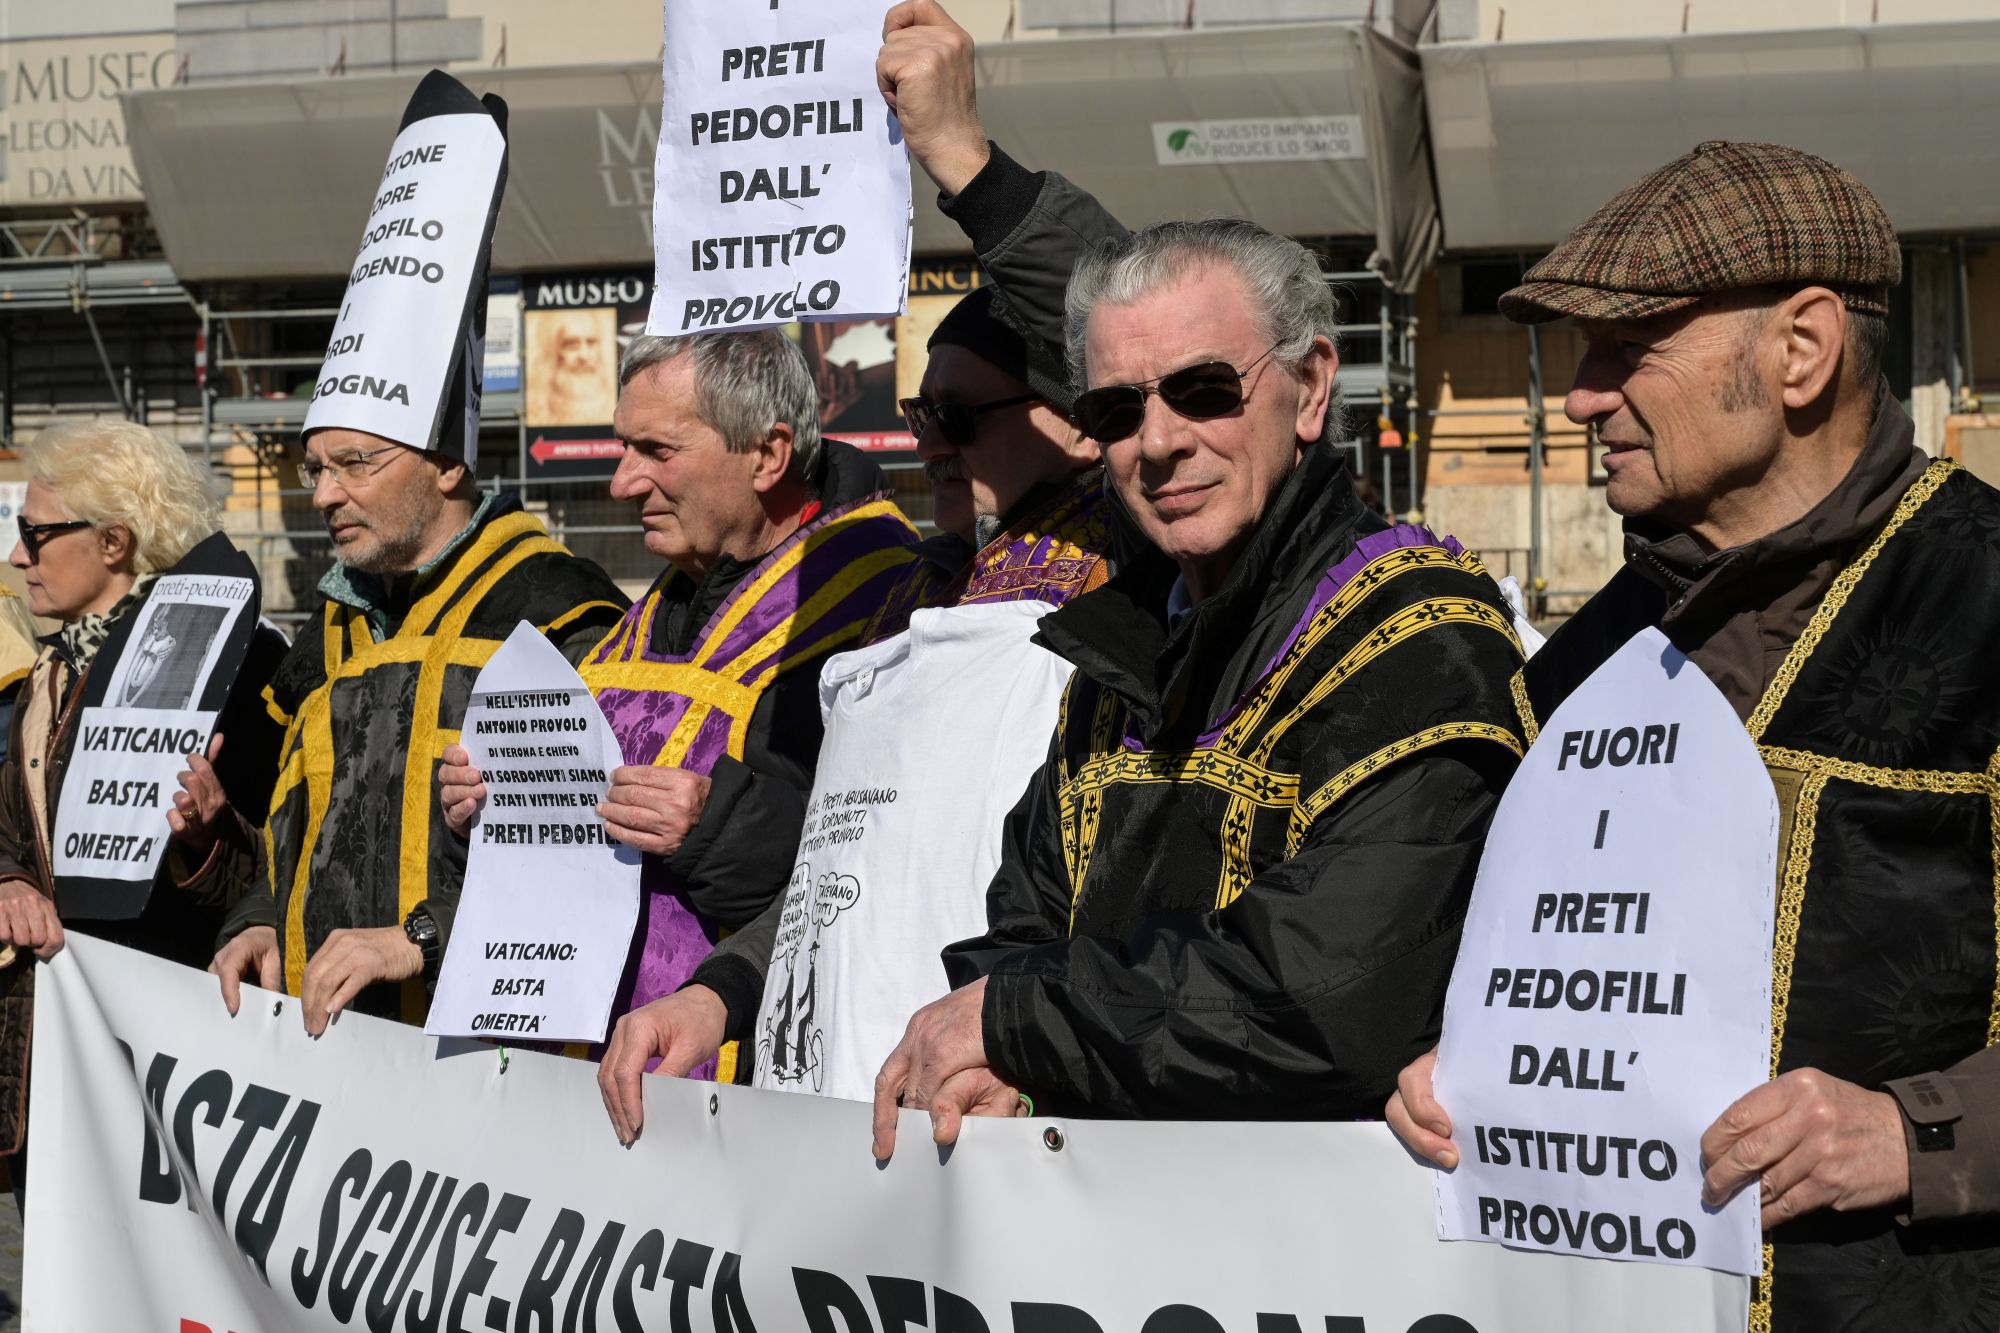 Süketnémák tüntetnek a vatikáni tanácskozás helyszínén, emlékeztetve a Provolo Intézet nehezen feldolgozható történetére